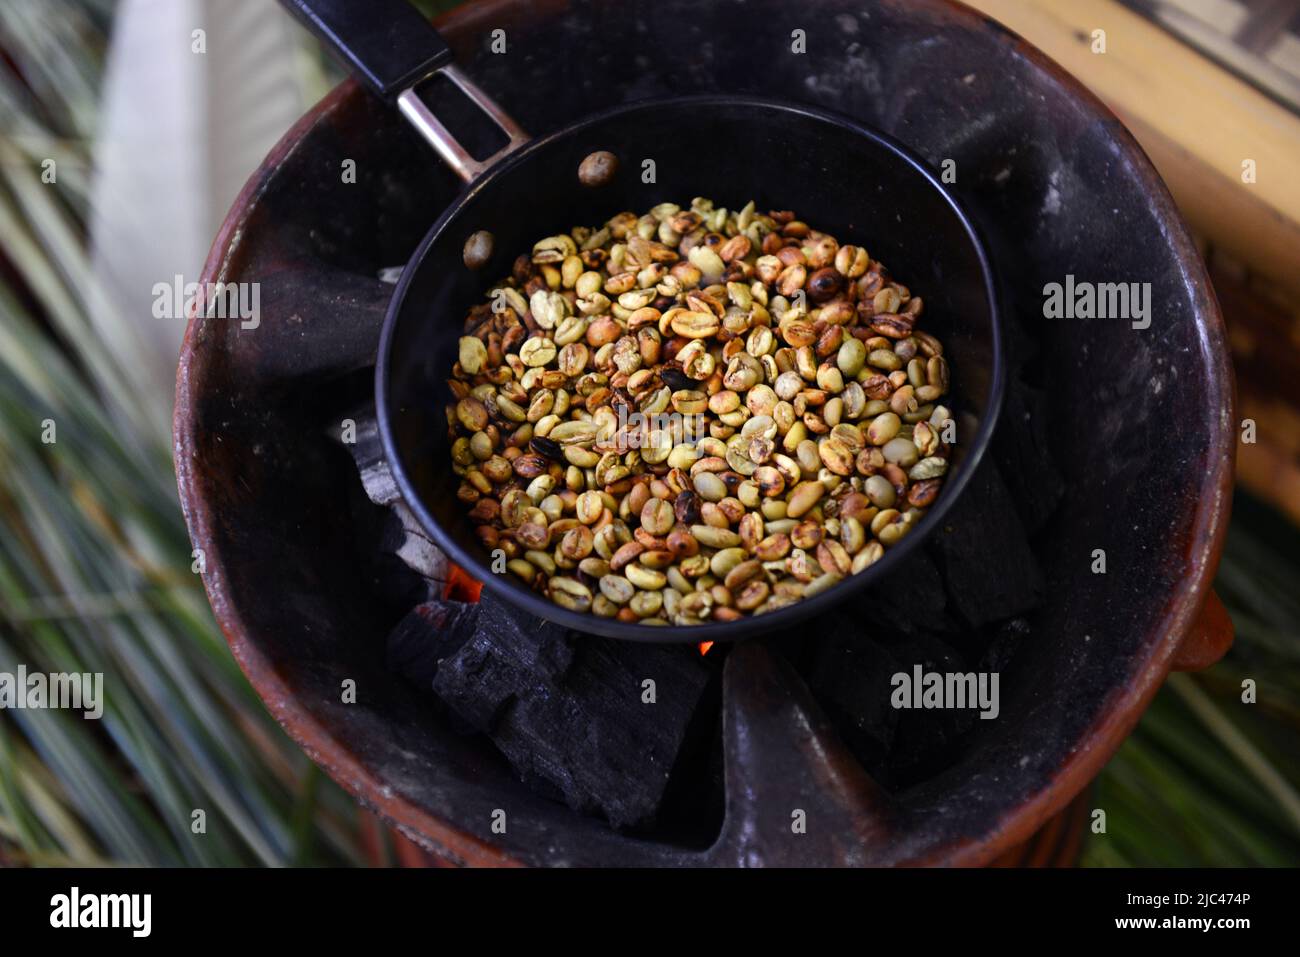 Torréfaction des grains de café lors d'une cérémonie traditionnelle du café éthiopien. Banque D'Images